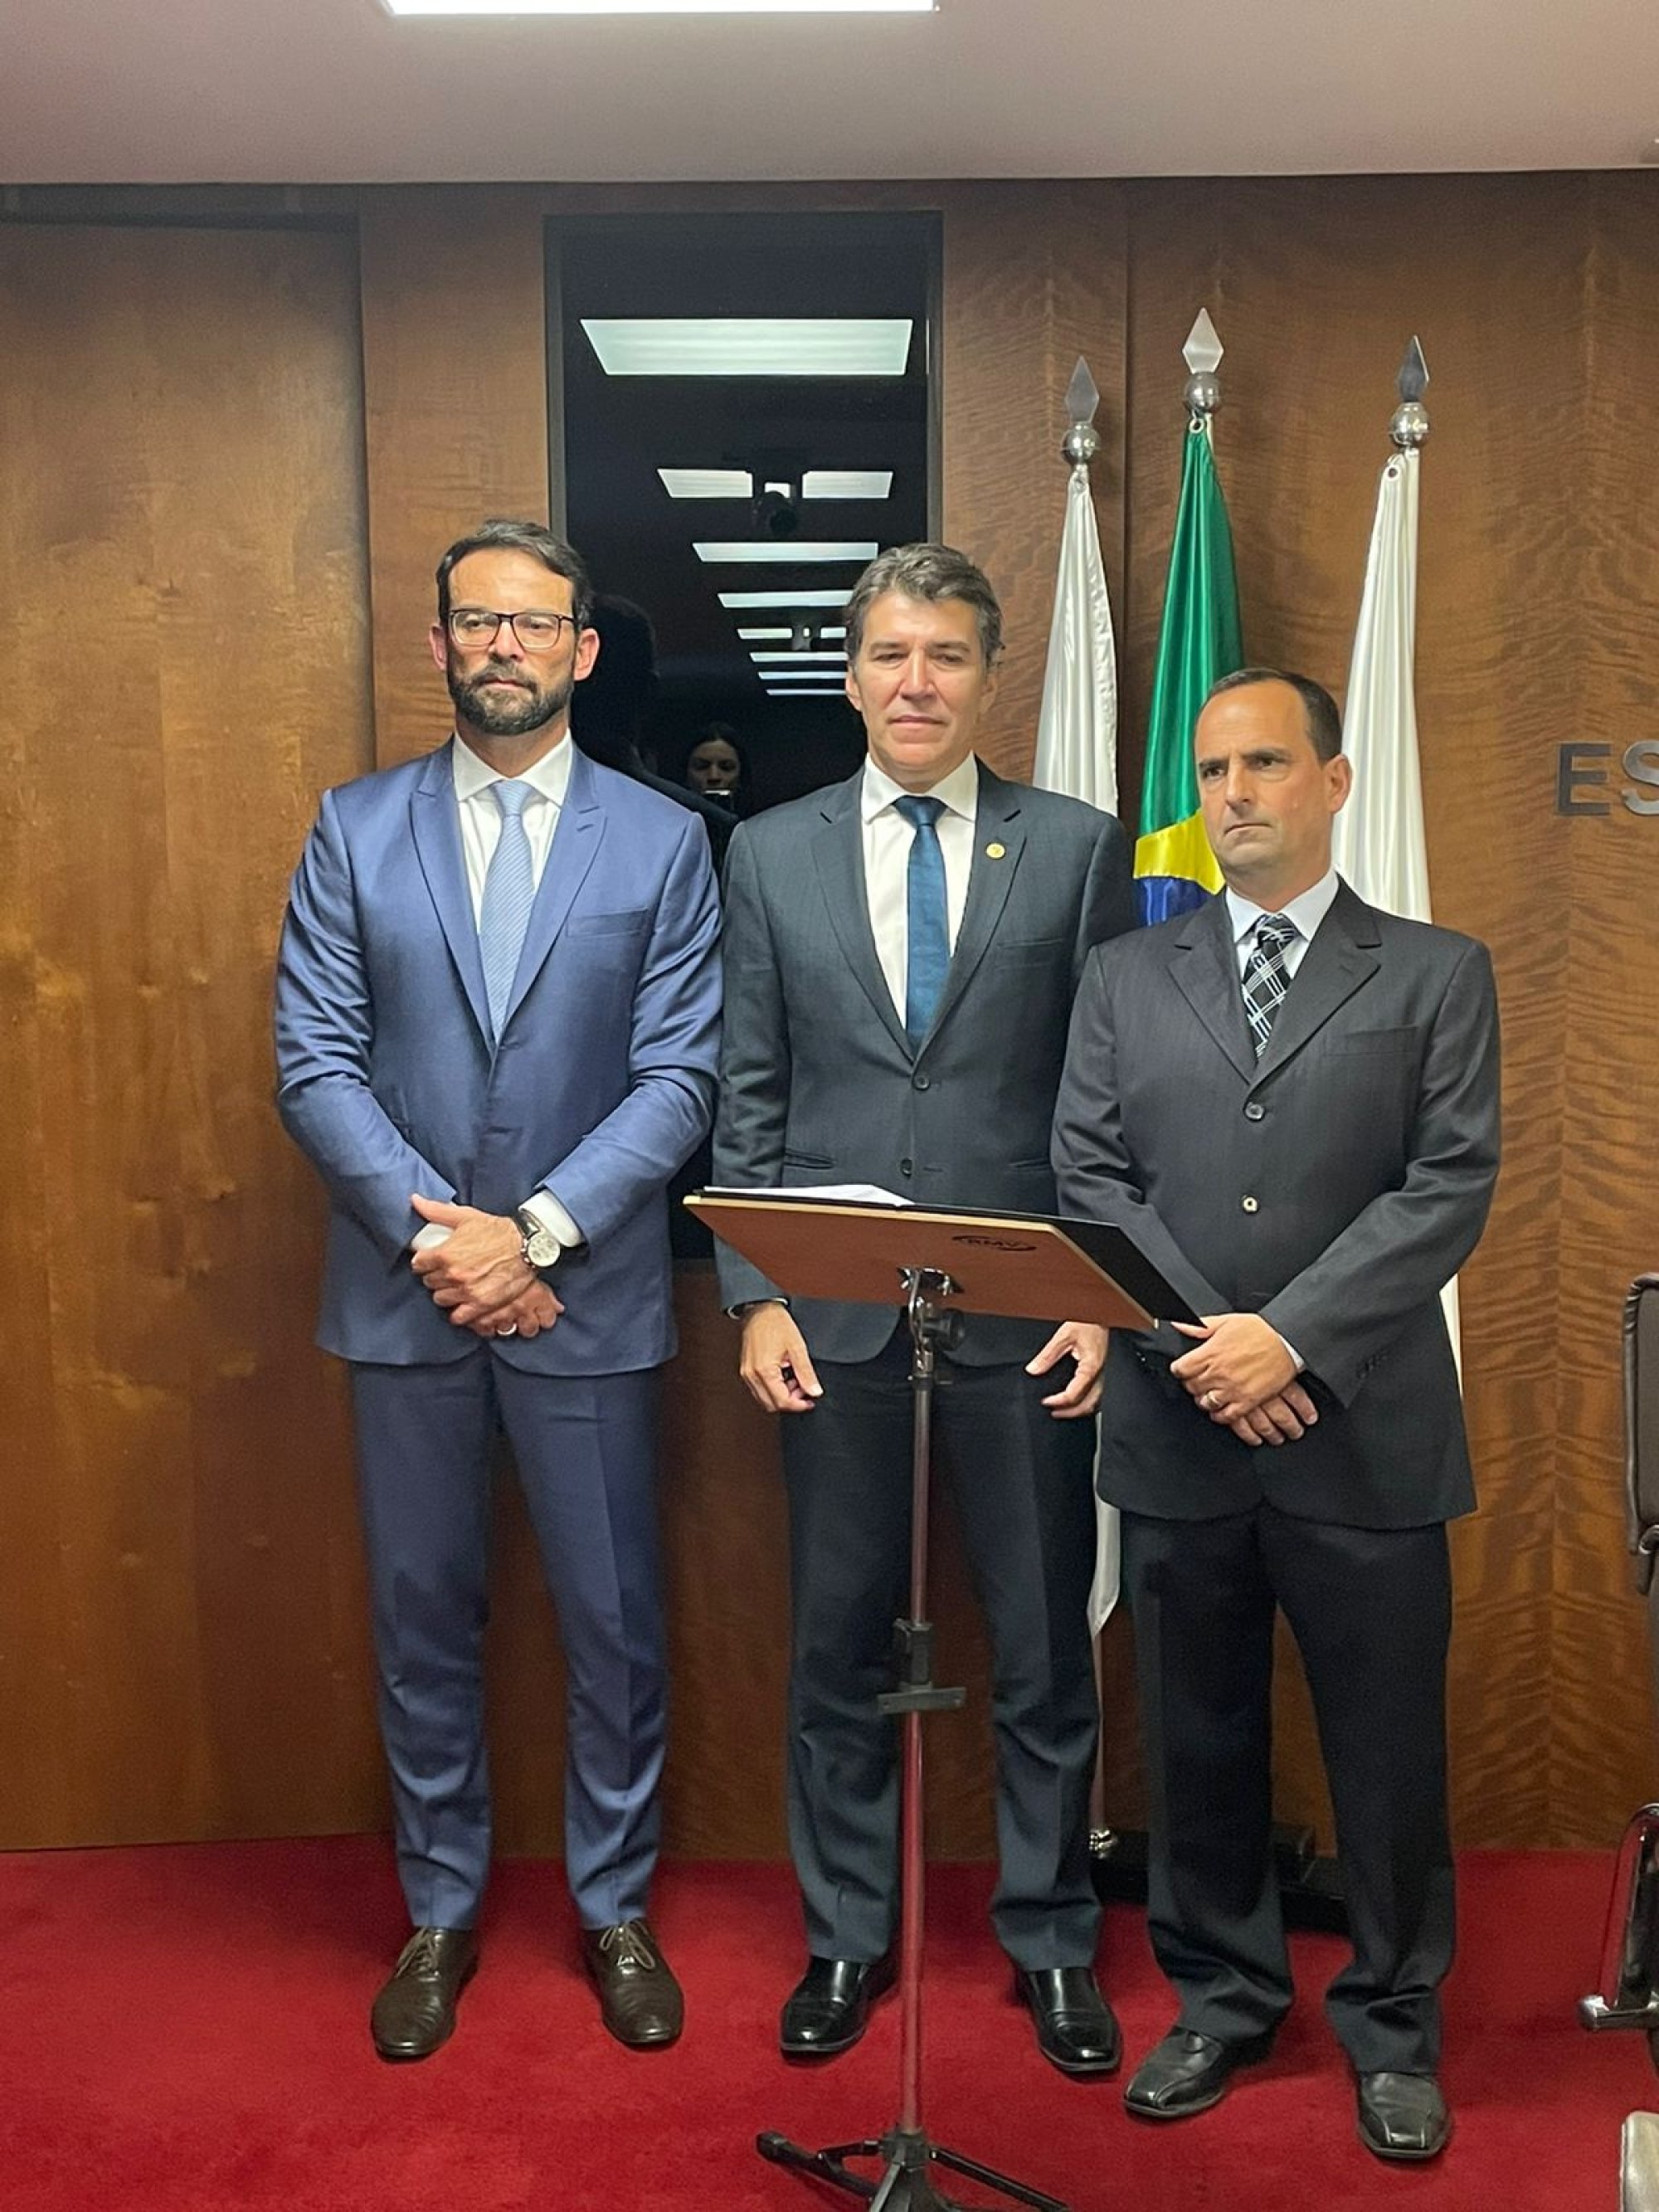 Ministério Público de Minas Gerais assina termo de cooperação com CONIB contra discriminação e intolerância - Fundada em 1948, a CONIB – Confederação Israelita do Brasil é o órgão de representação e coordenação política da comunidade judaica brasileira. 